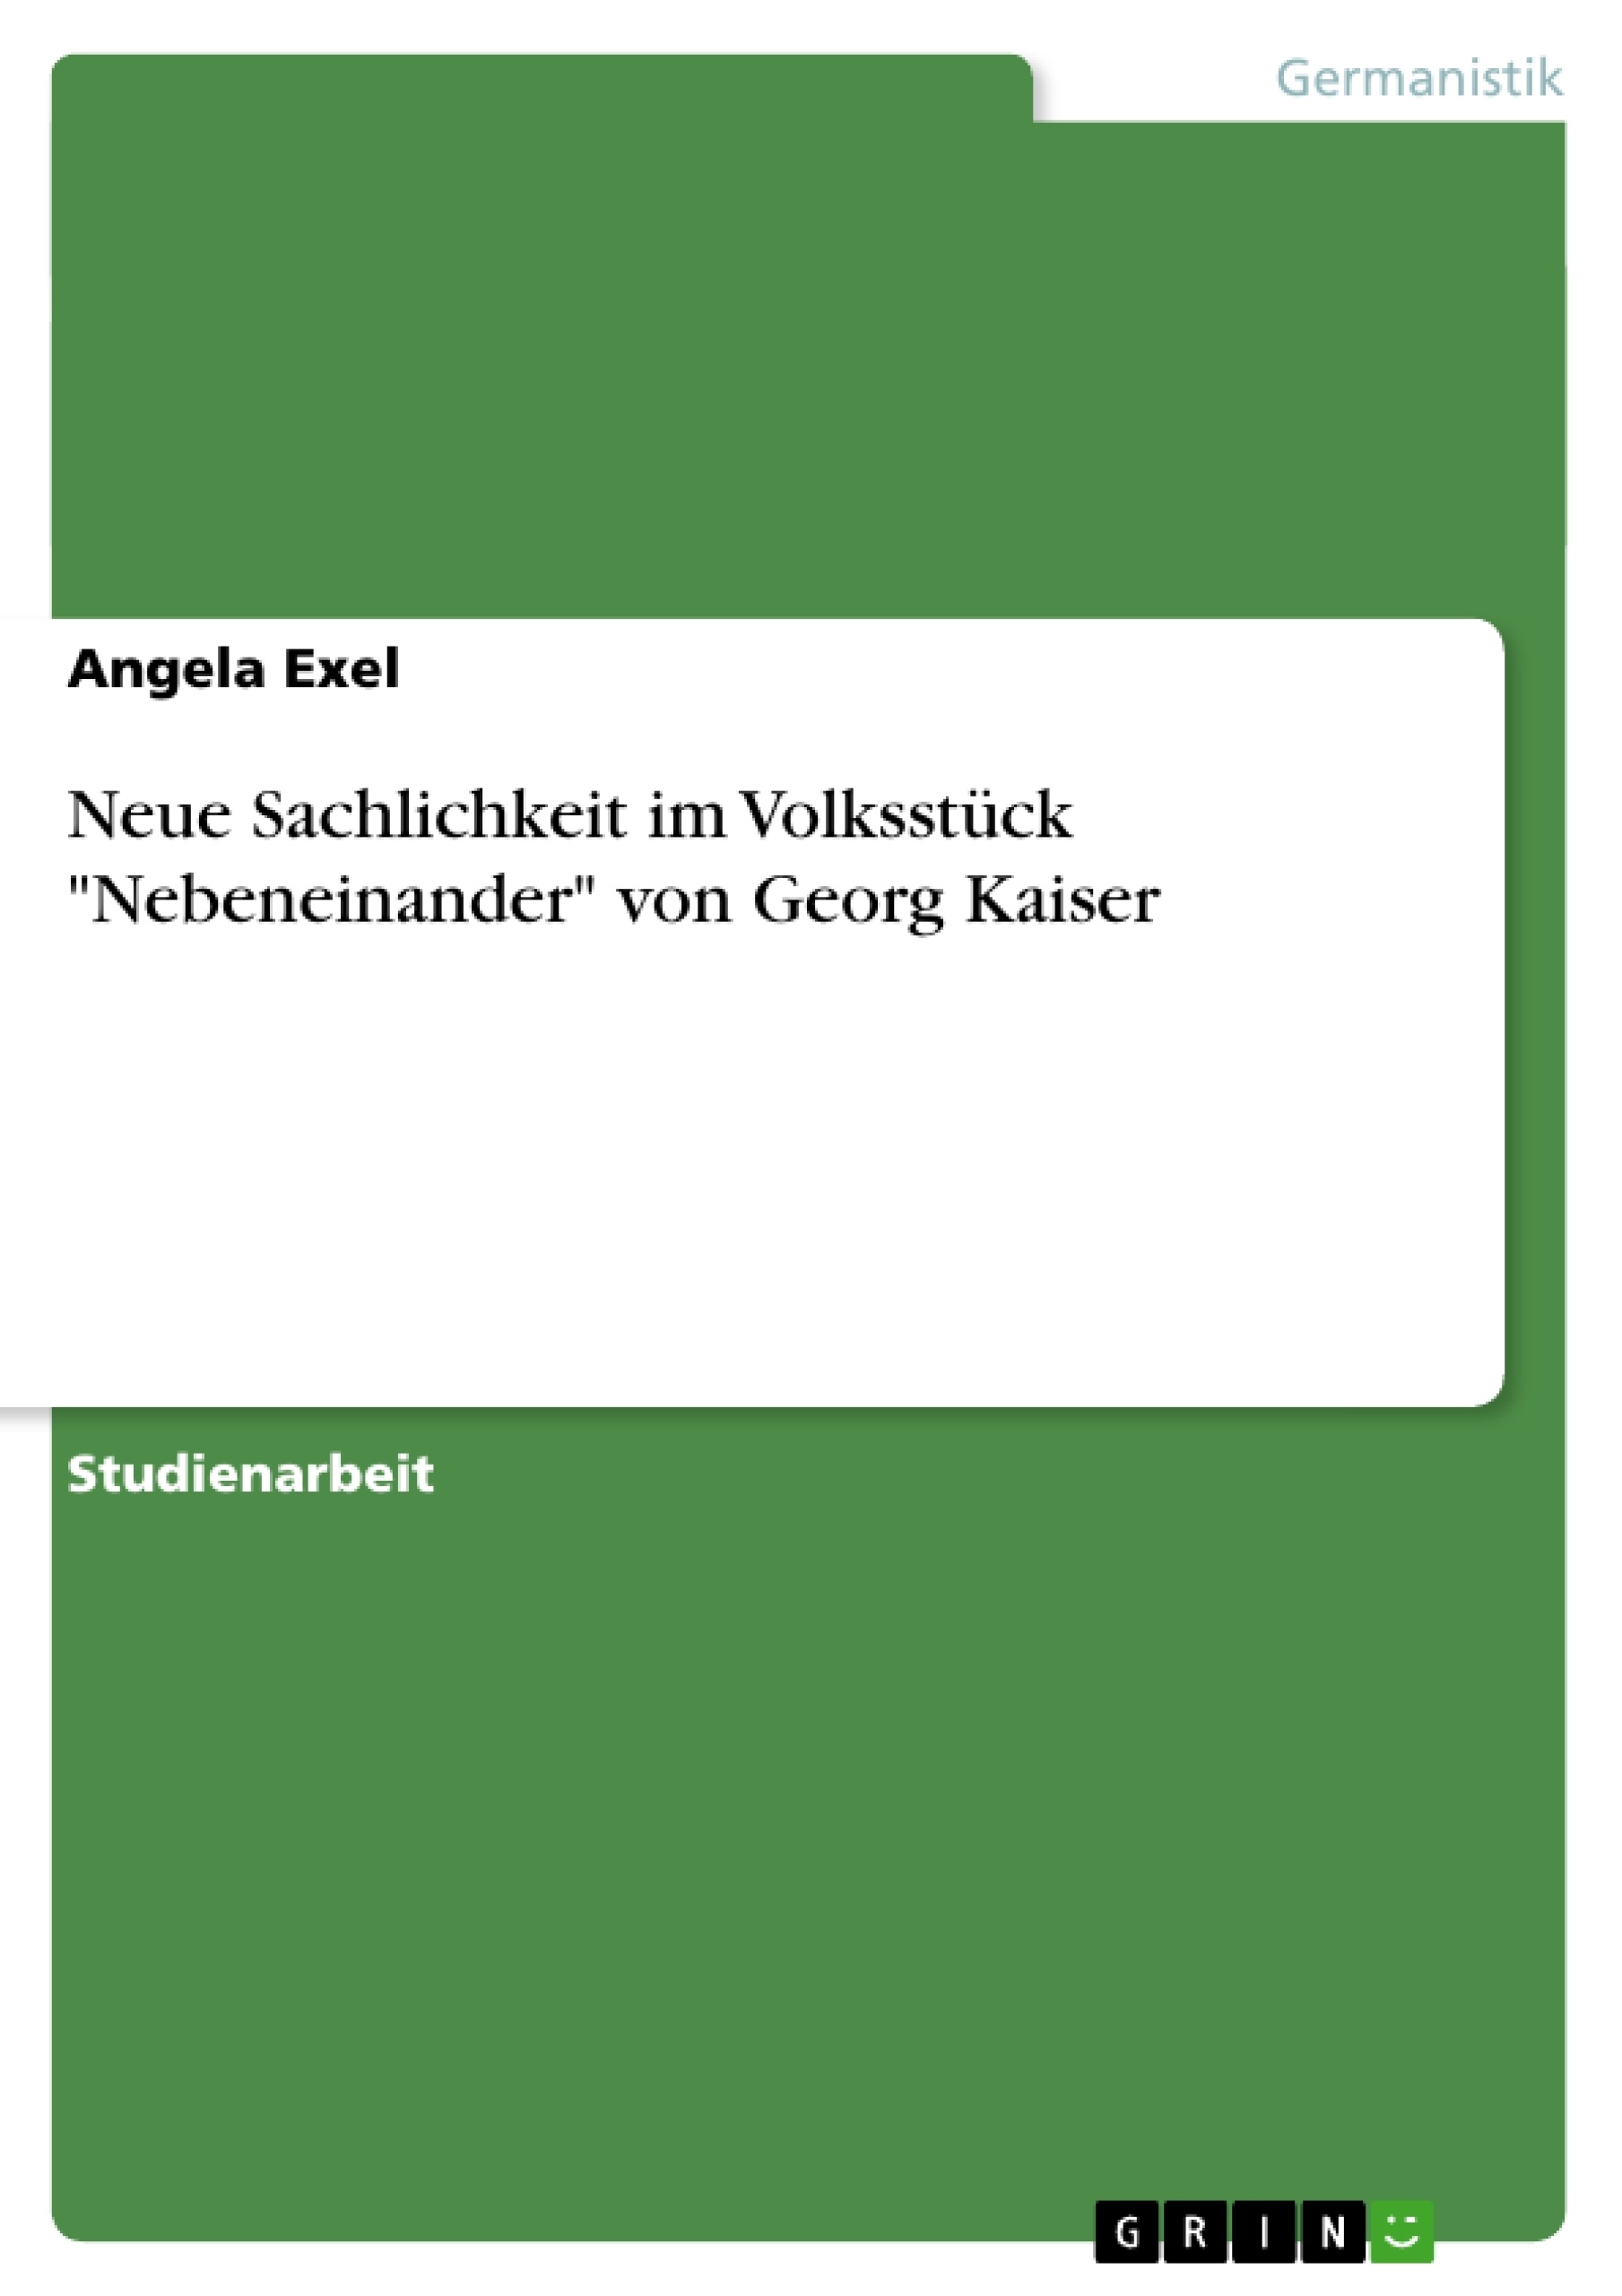 Título: Neue Sachlichkeit im Volksstück "Nebeneinander" von Georg Kaiser